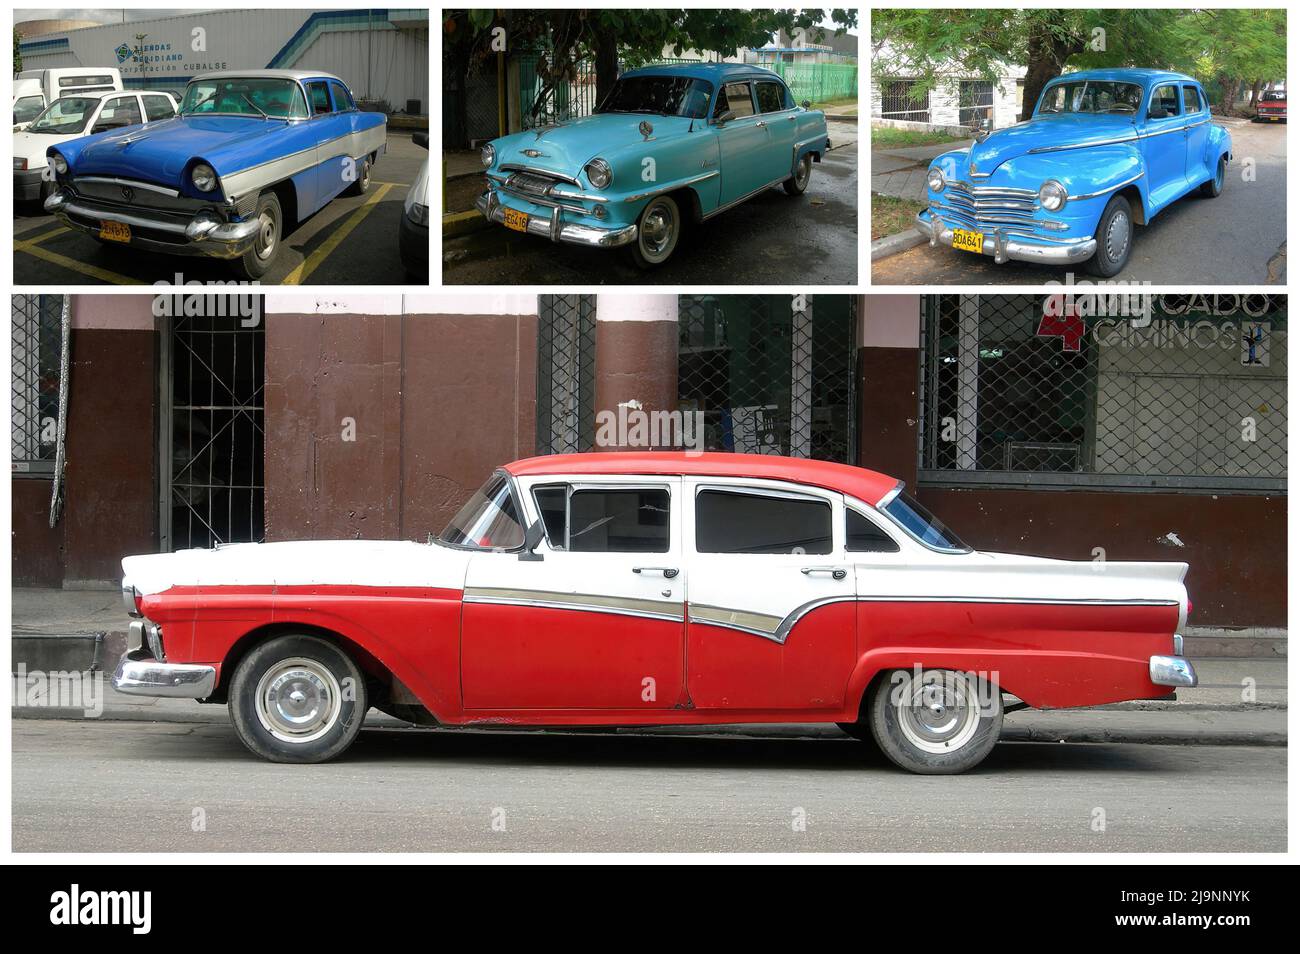 Il propose des voitures américaines classiques dans les rues de la vieille ville de la Havane Banque D'Images